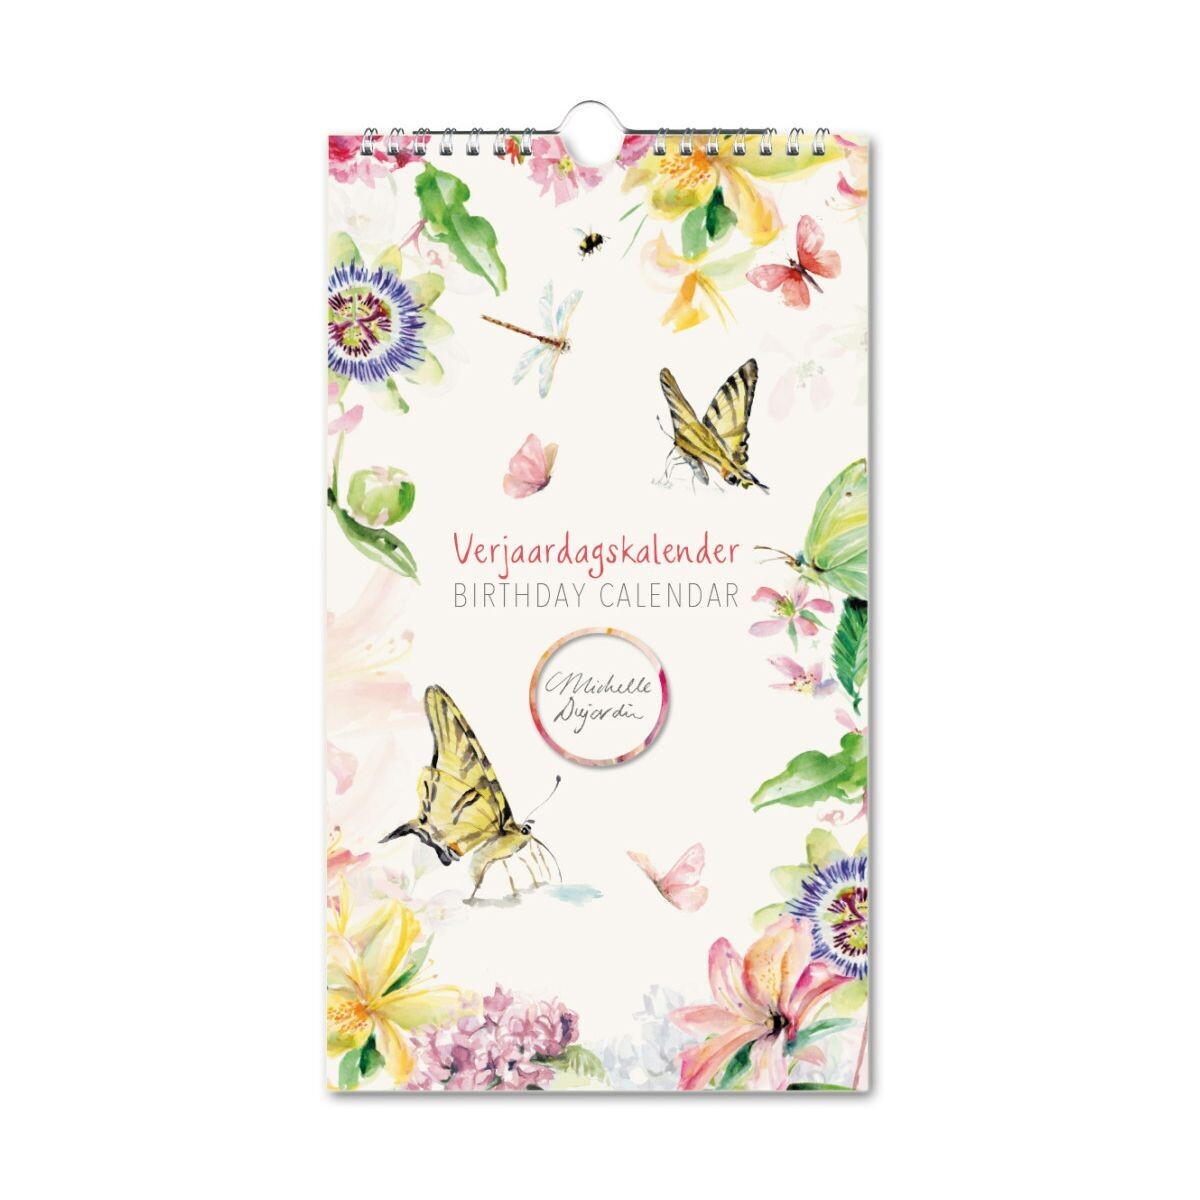 Birthday calendar butterflies & flowers